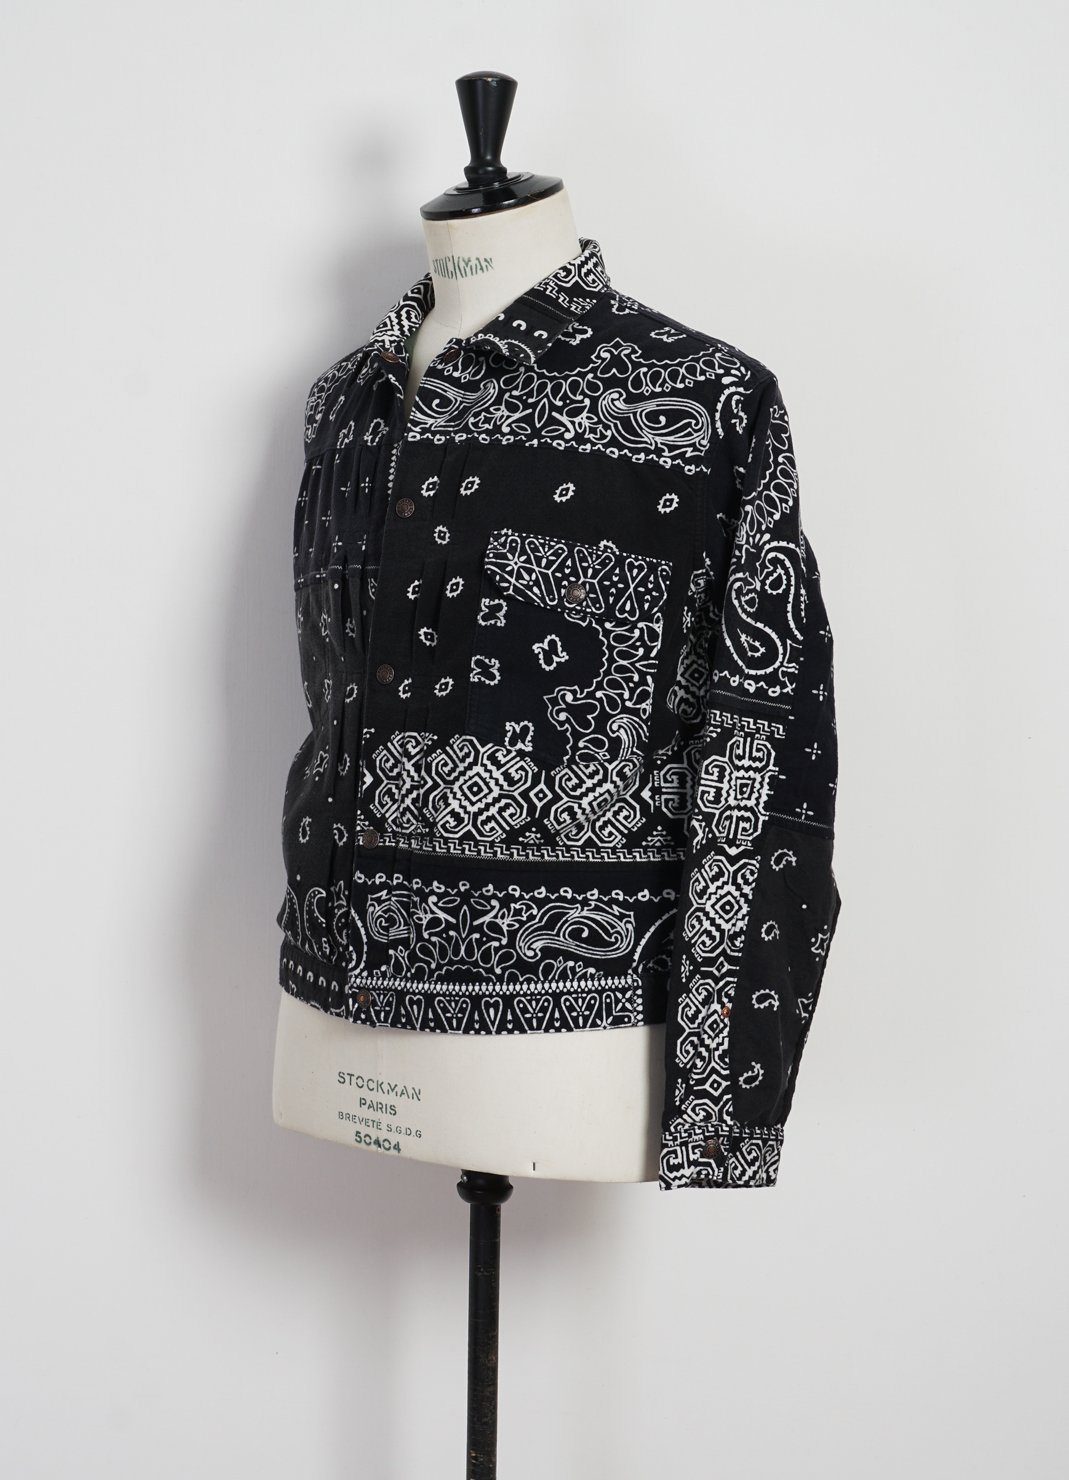 KAPITAL - Flannel 1st | Reversible Bandana Jacket | Black x Khaki - HANSEN Garments